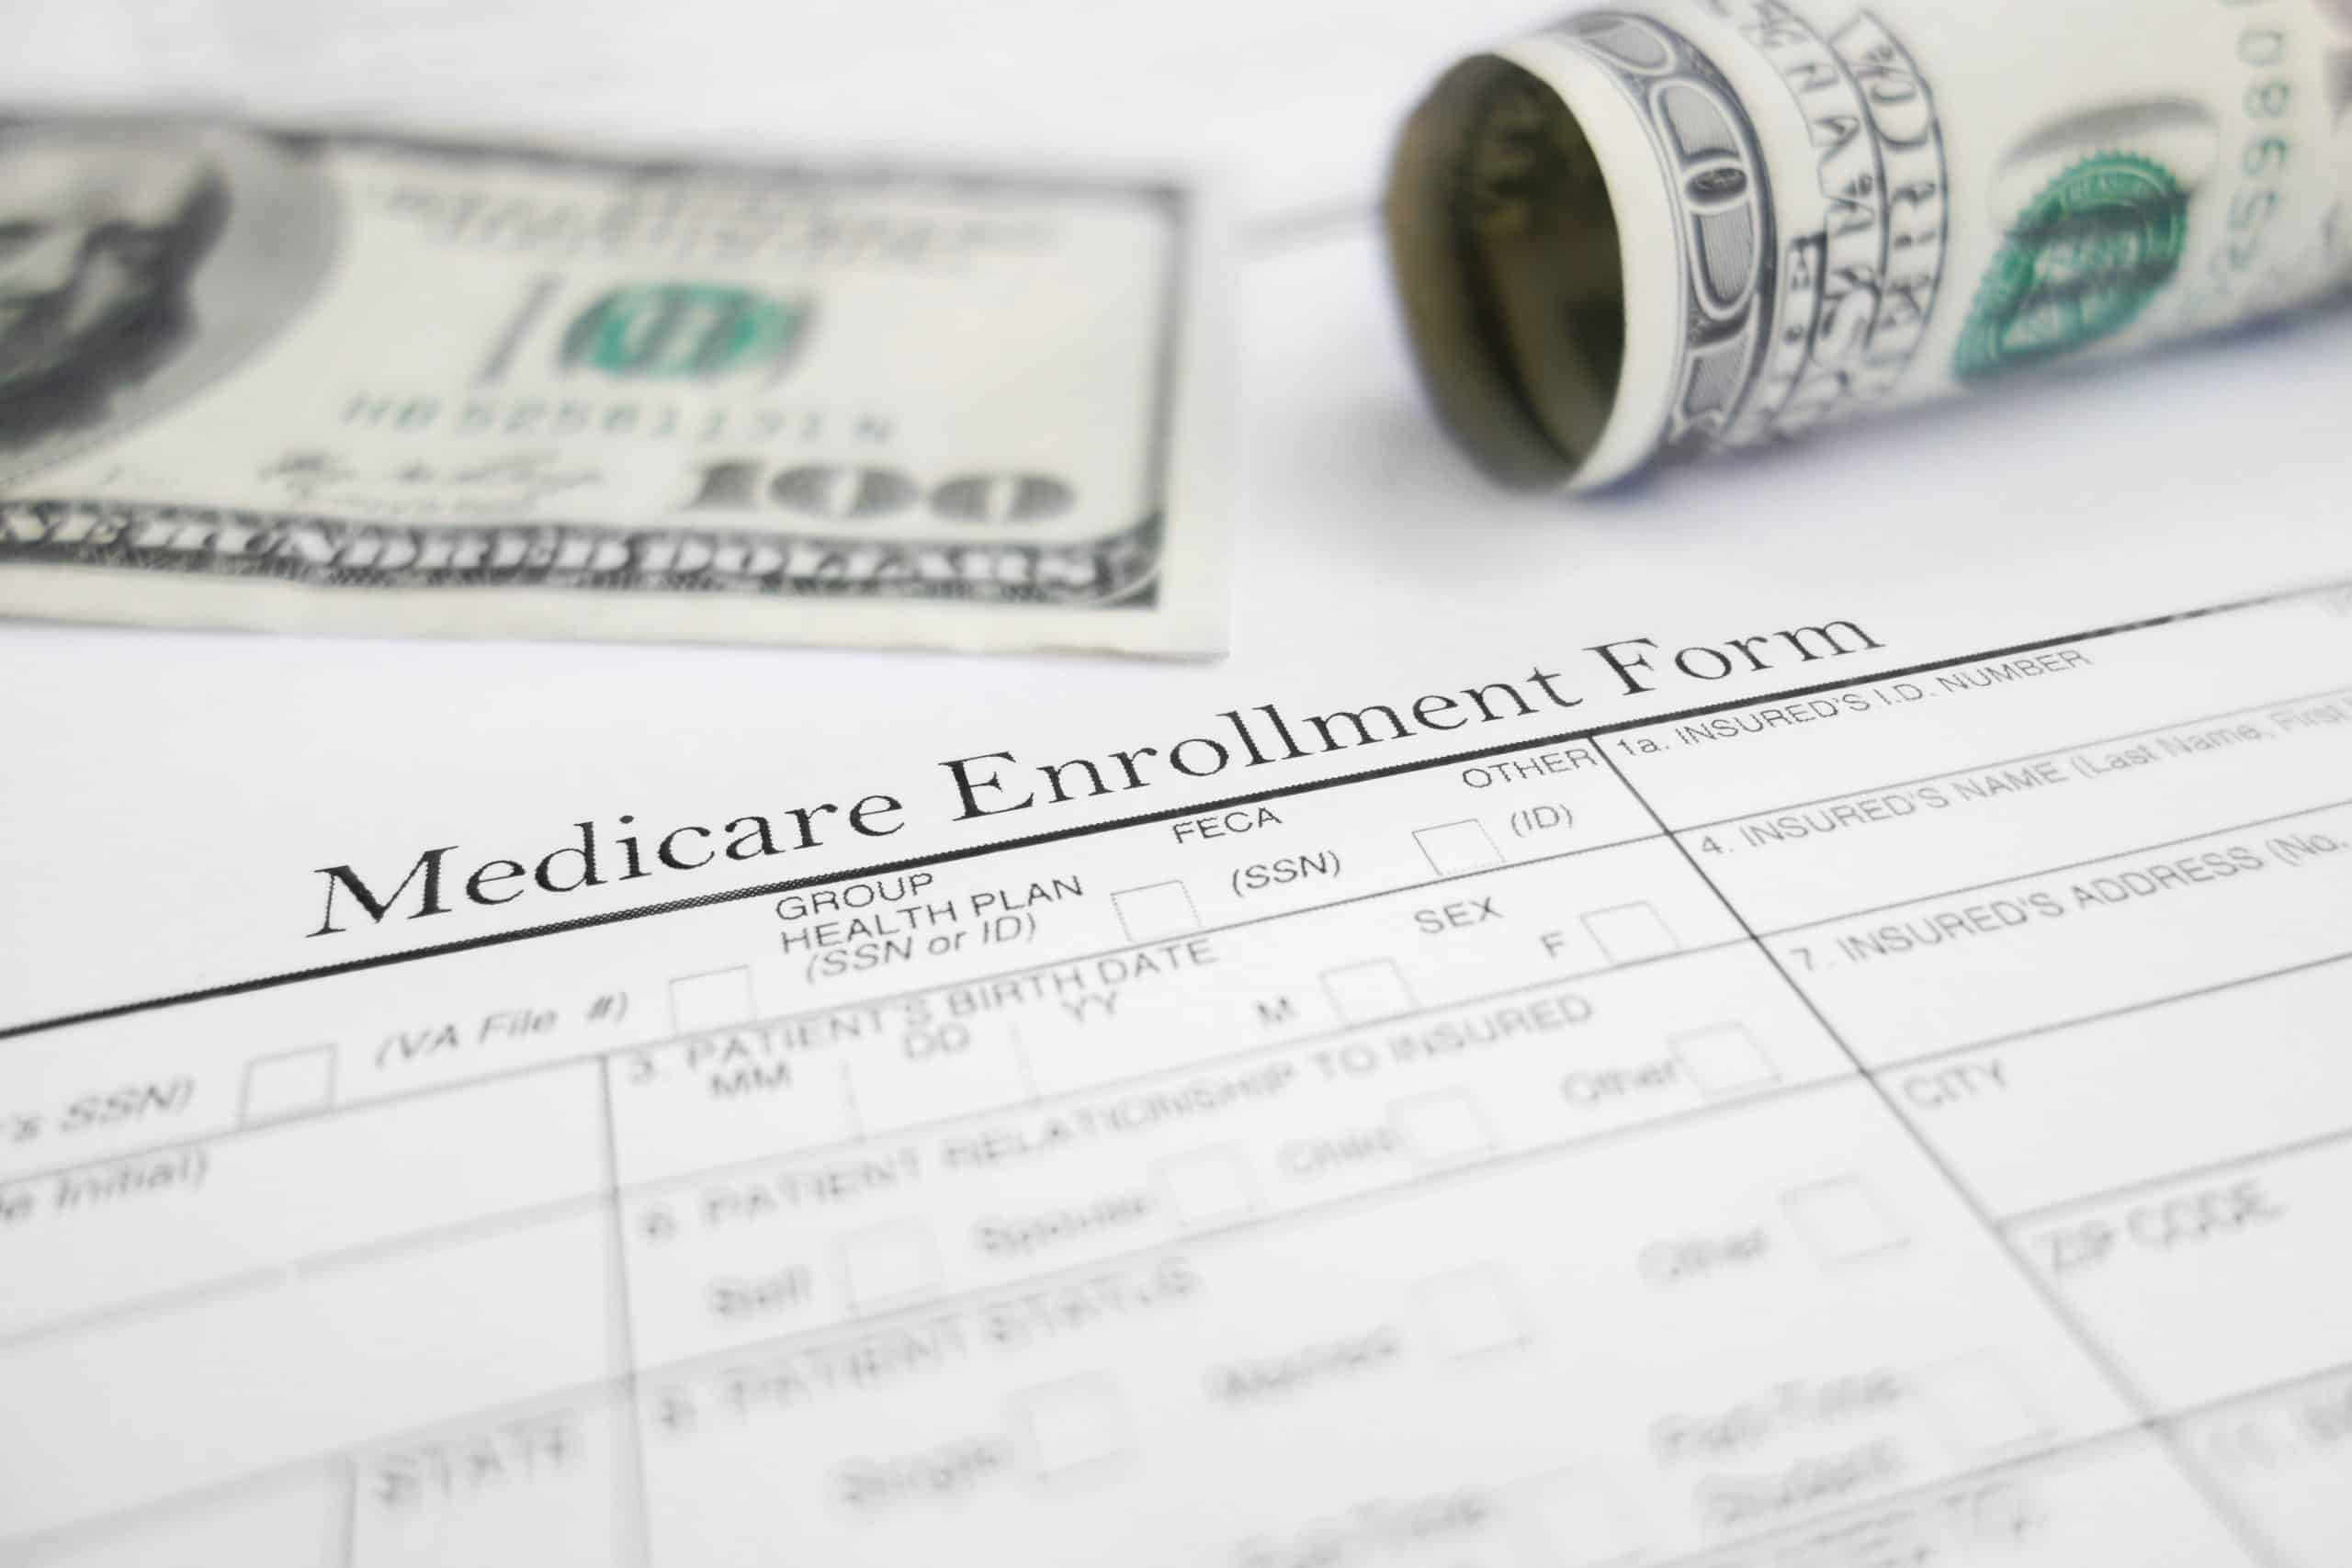 Medicare enrollment form and money